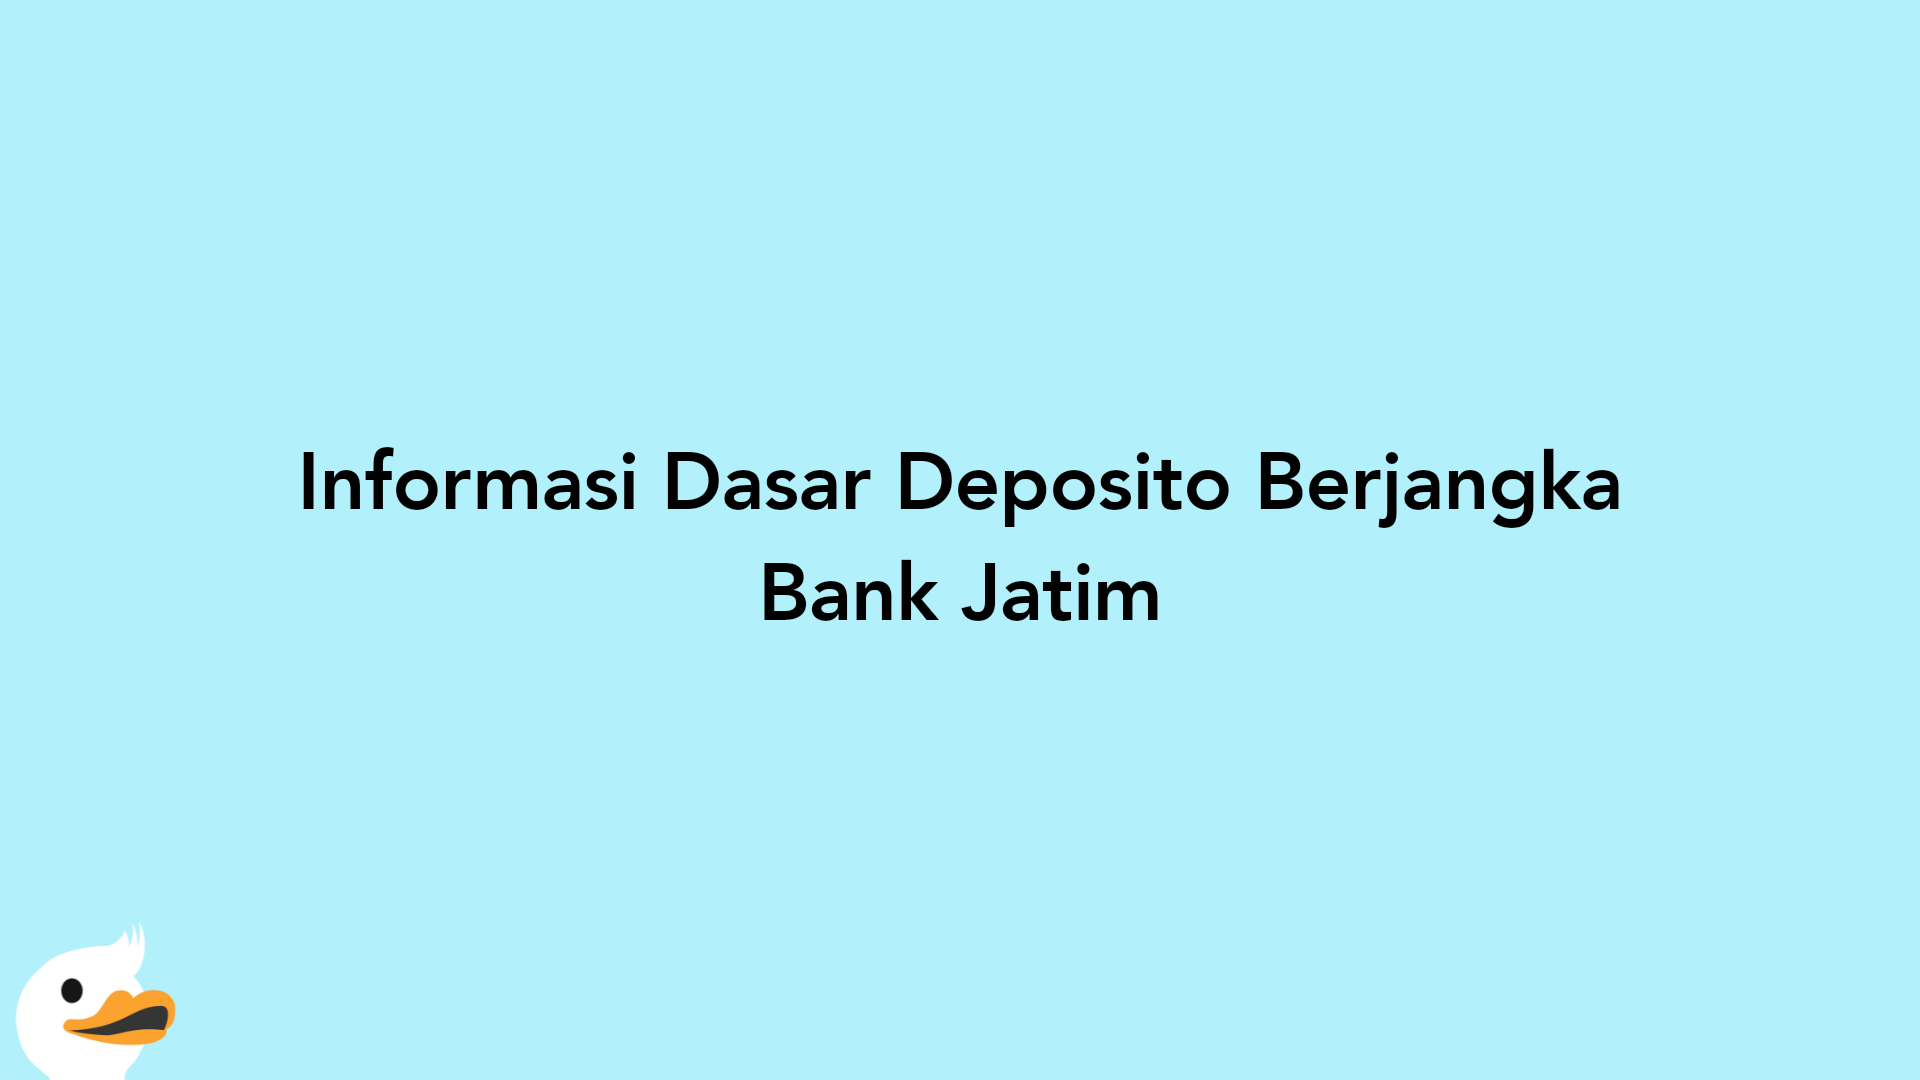 Informasi Dasar Deposito Berjangka Bank Jatim